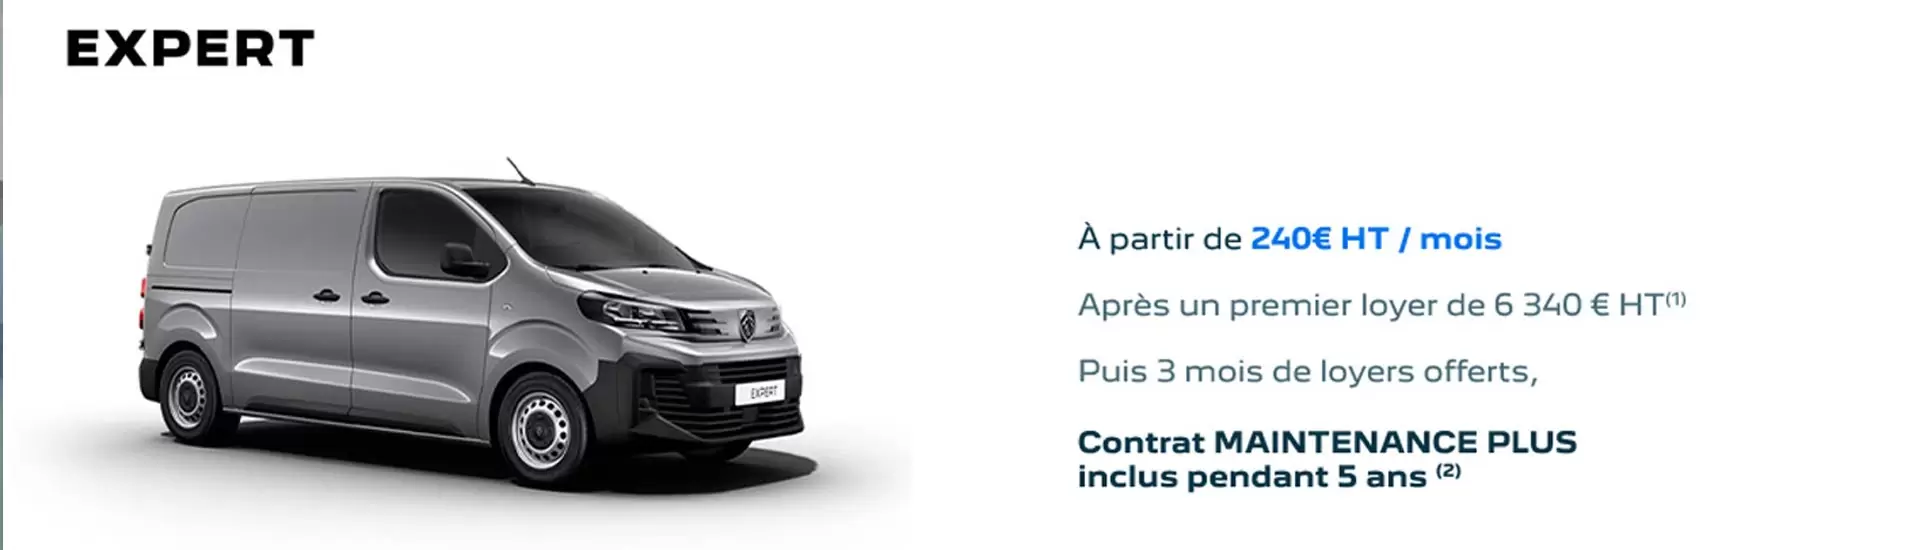 Peugeot Expert à partir de 240€ HT/mois